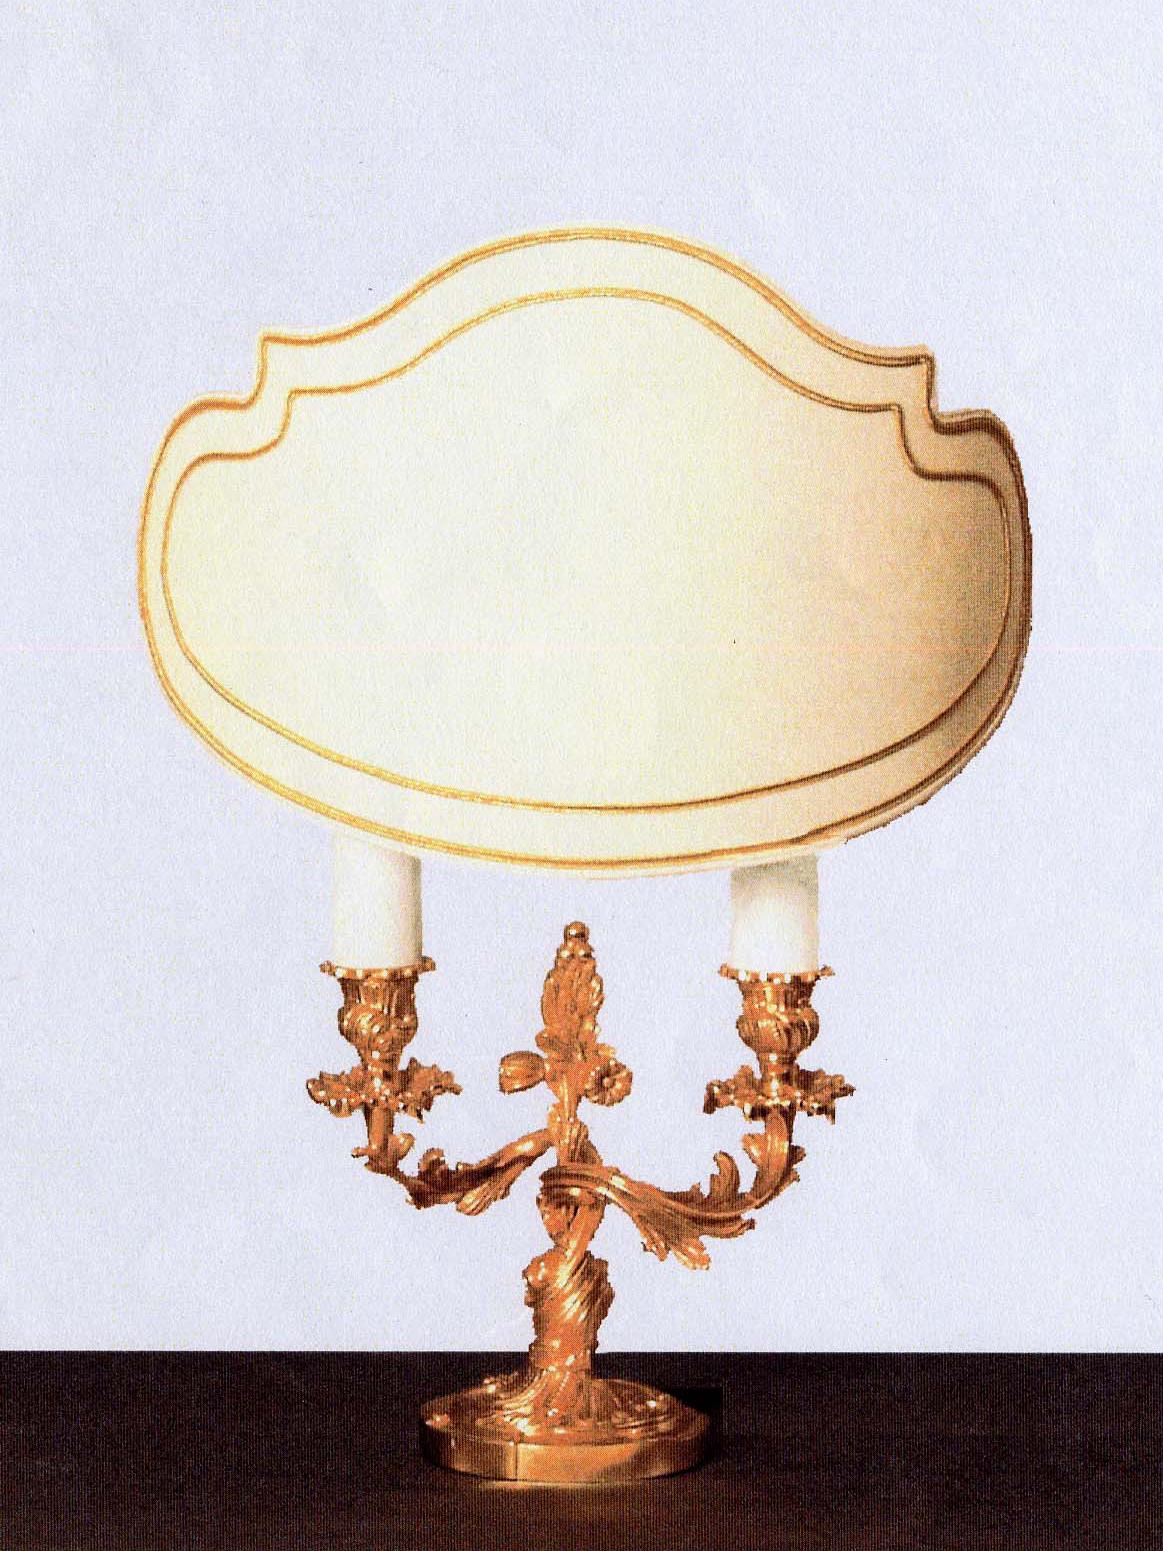 Diese vergoldete Bronzelampe im Stil Louis XV  von Gherardo Degli Albizzi nimmt den Geschmack der Dekoration der Rococò-Zeit wieder auf. Das Stück ist mit pflanzlichen Motiven verziert und zeichnet sich durch Eleganz und Opulenz in den Formen aus.